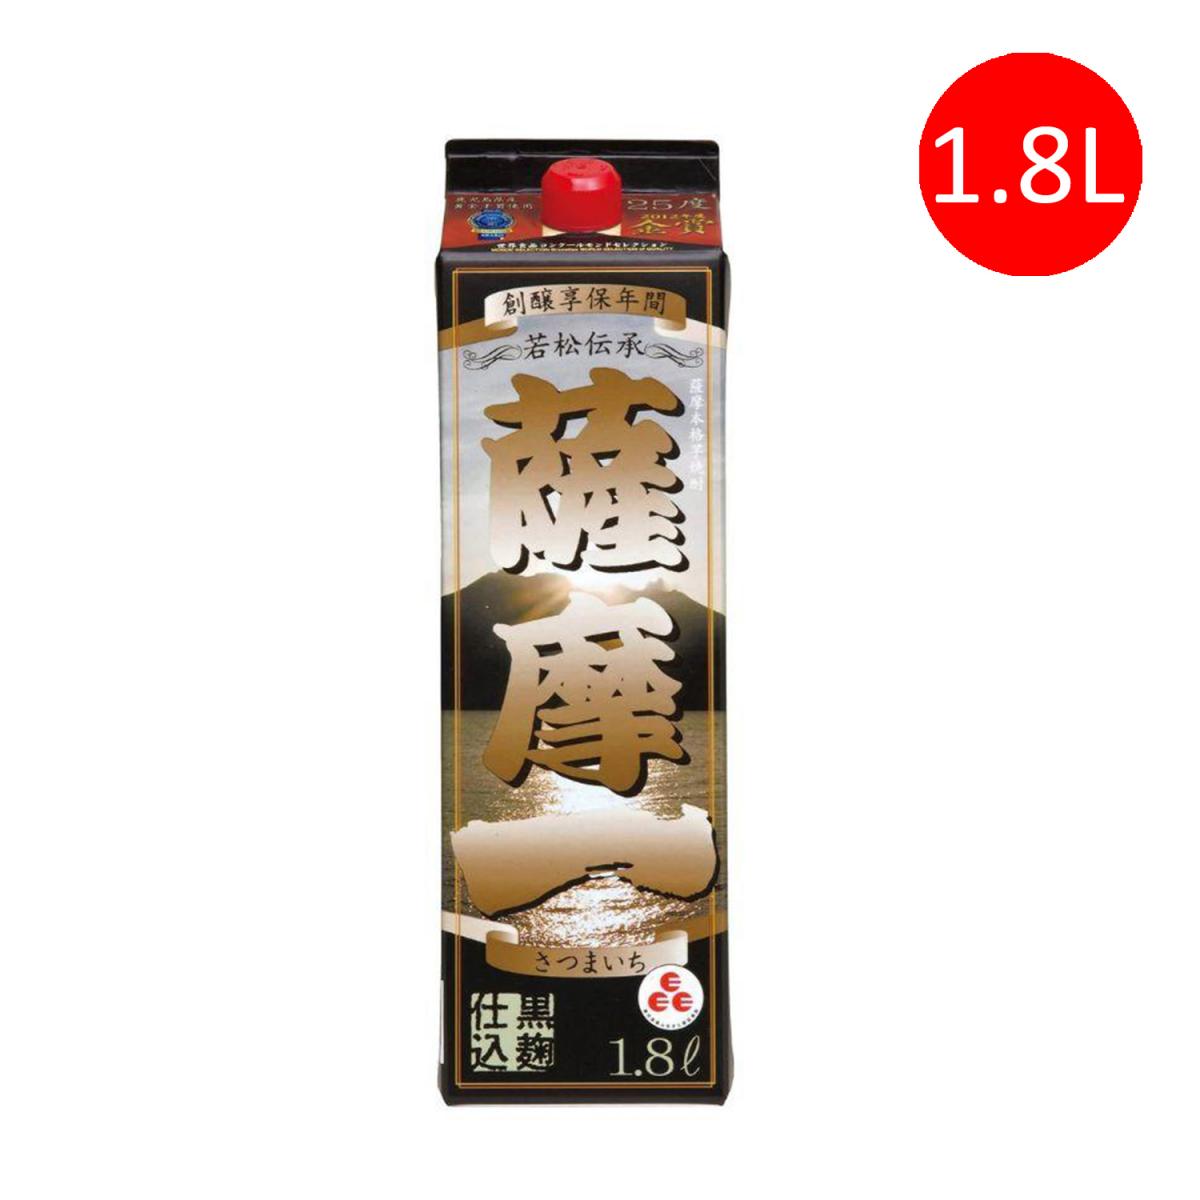 日本製 若松酒造 薩摩一 本格芋燒酎 燒酒 1.8L 盒裝 [9454]